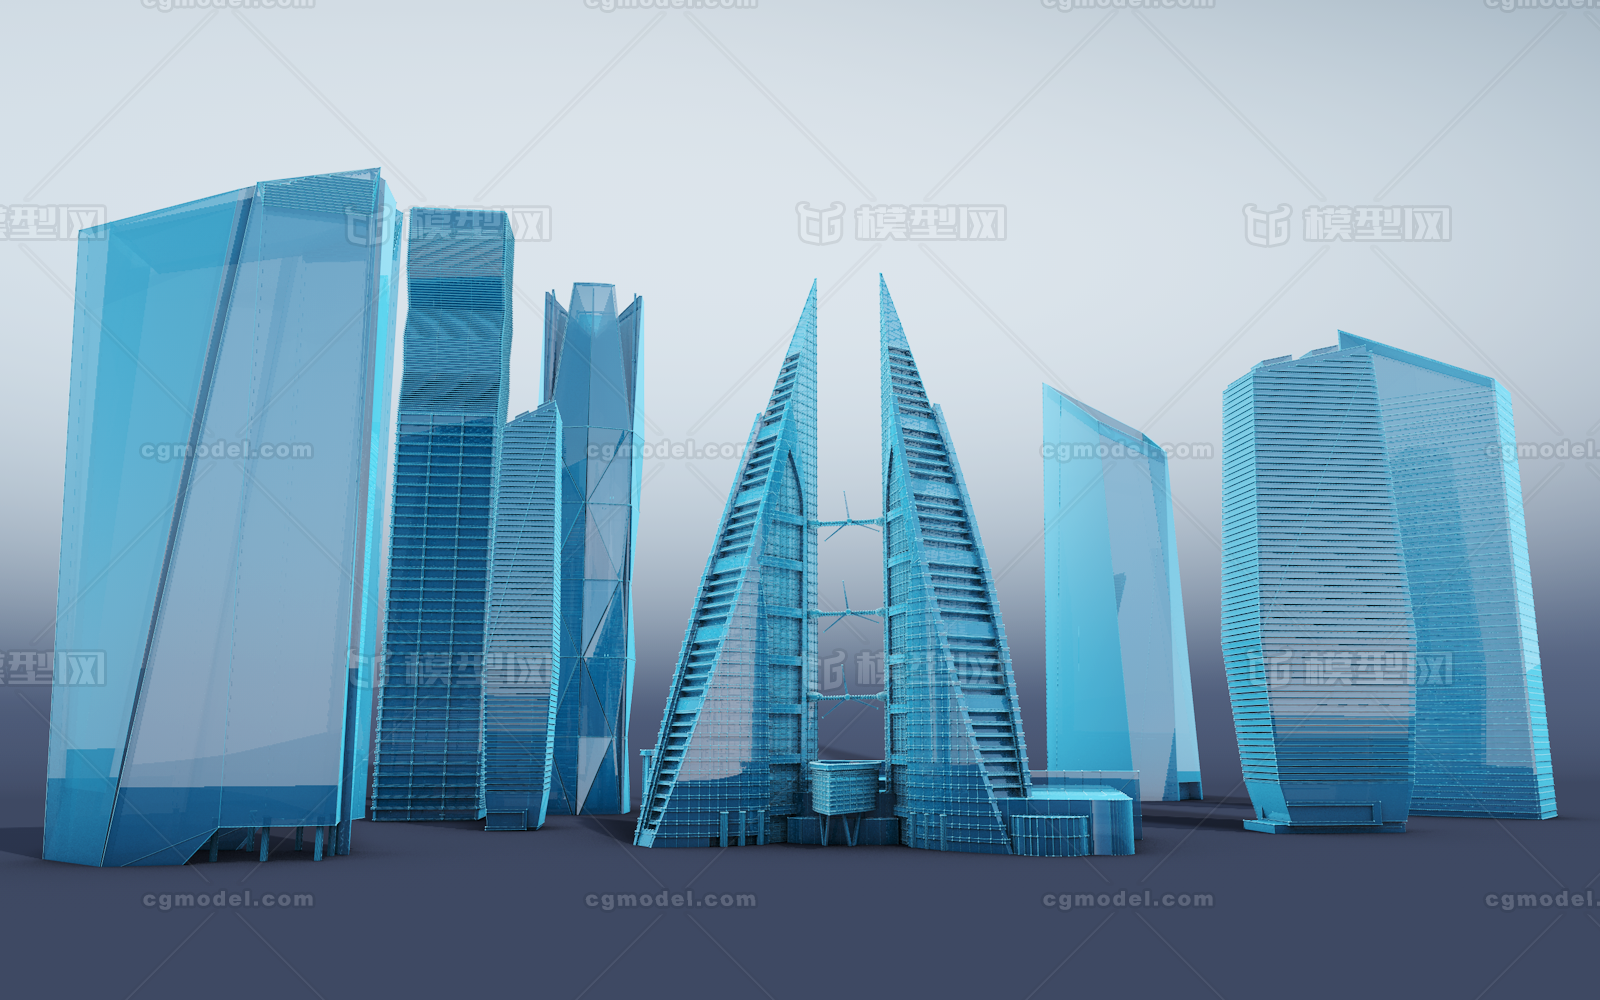 一组科技感的大楼,科技大楼,现代科技楼房,cbd科技大楼,蓝色科幻大楼